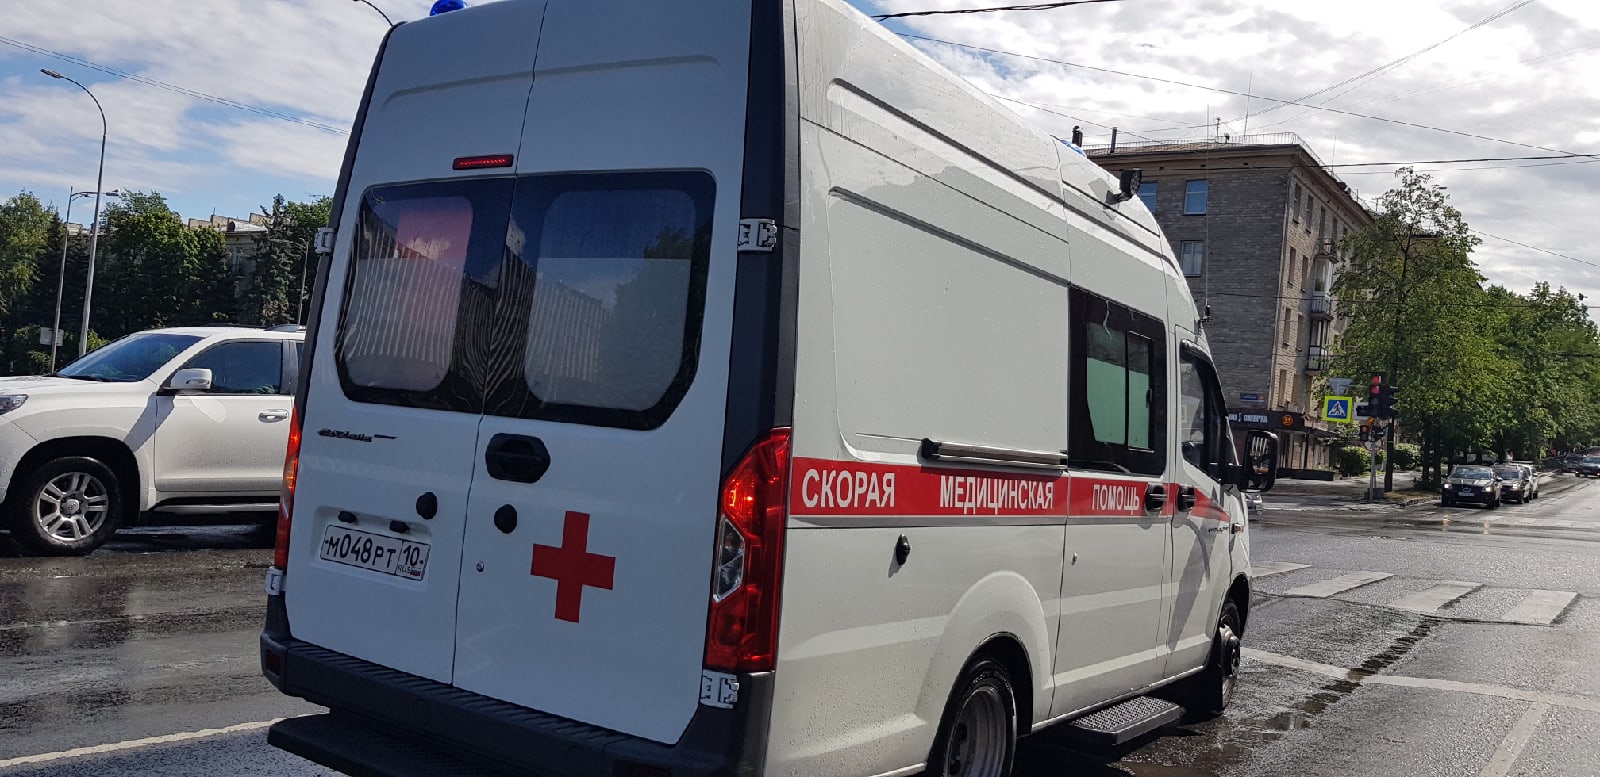 Пятеро детей с коронавирусом госпитализированы в Карелии (СРОЧНО)